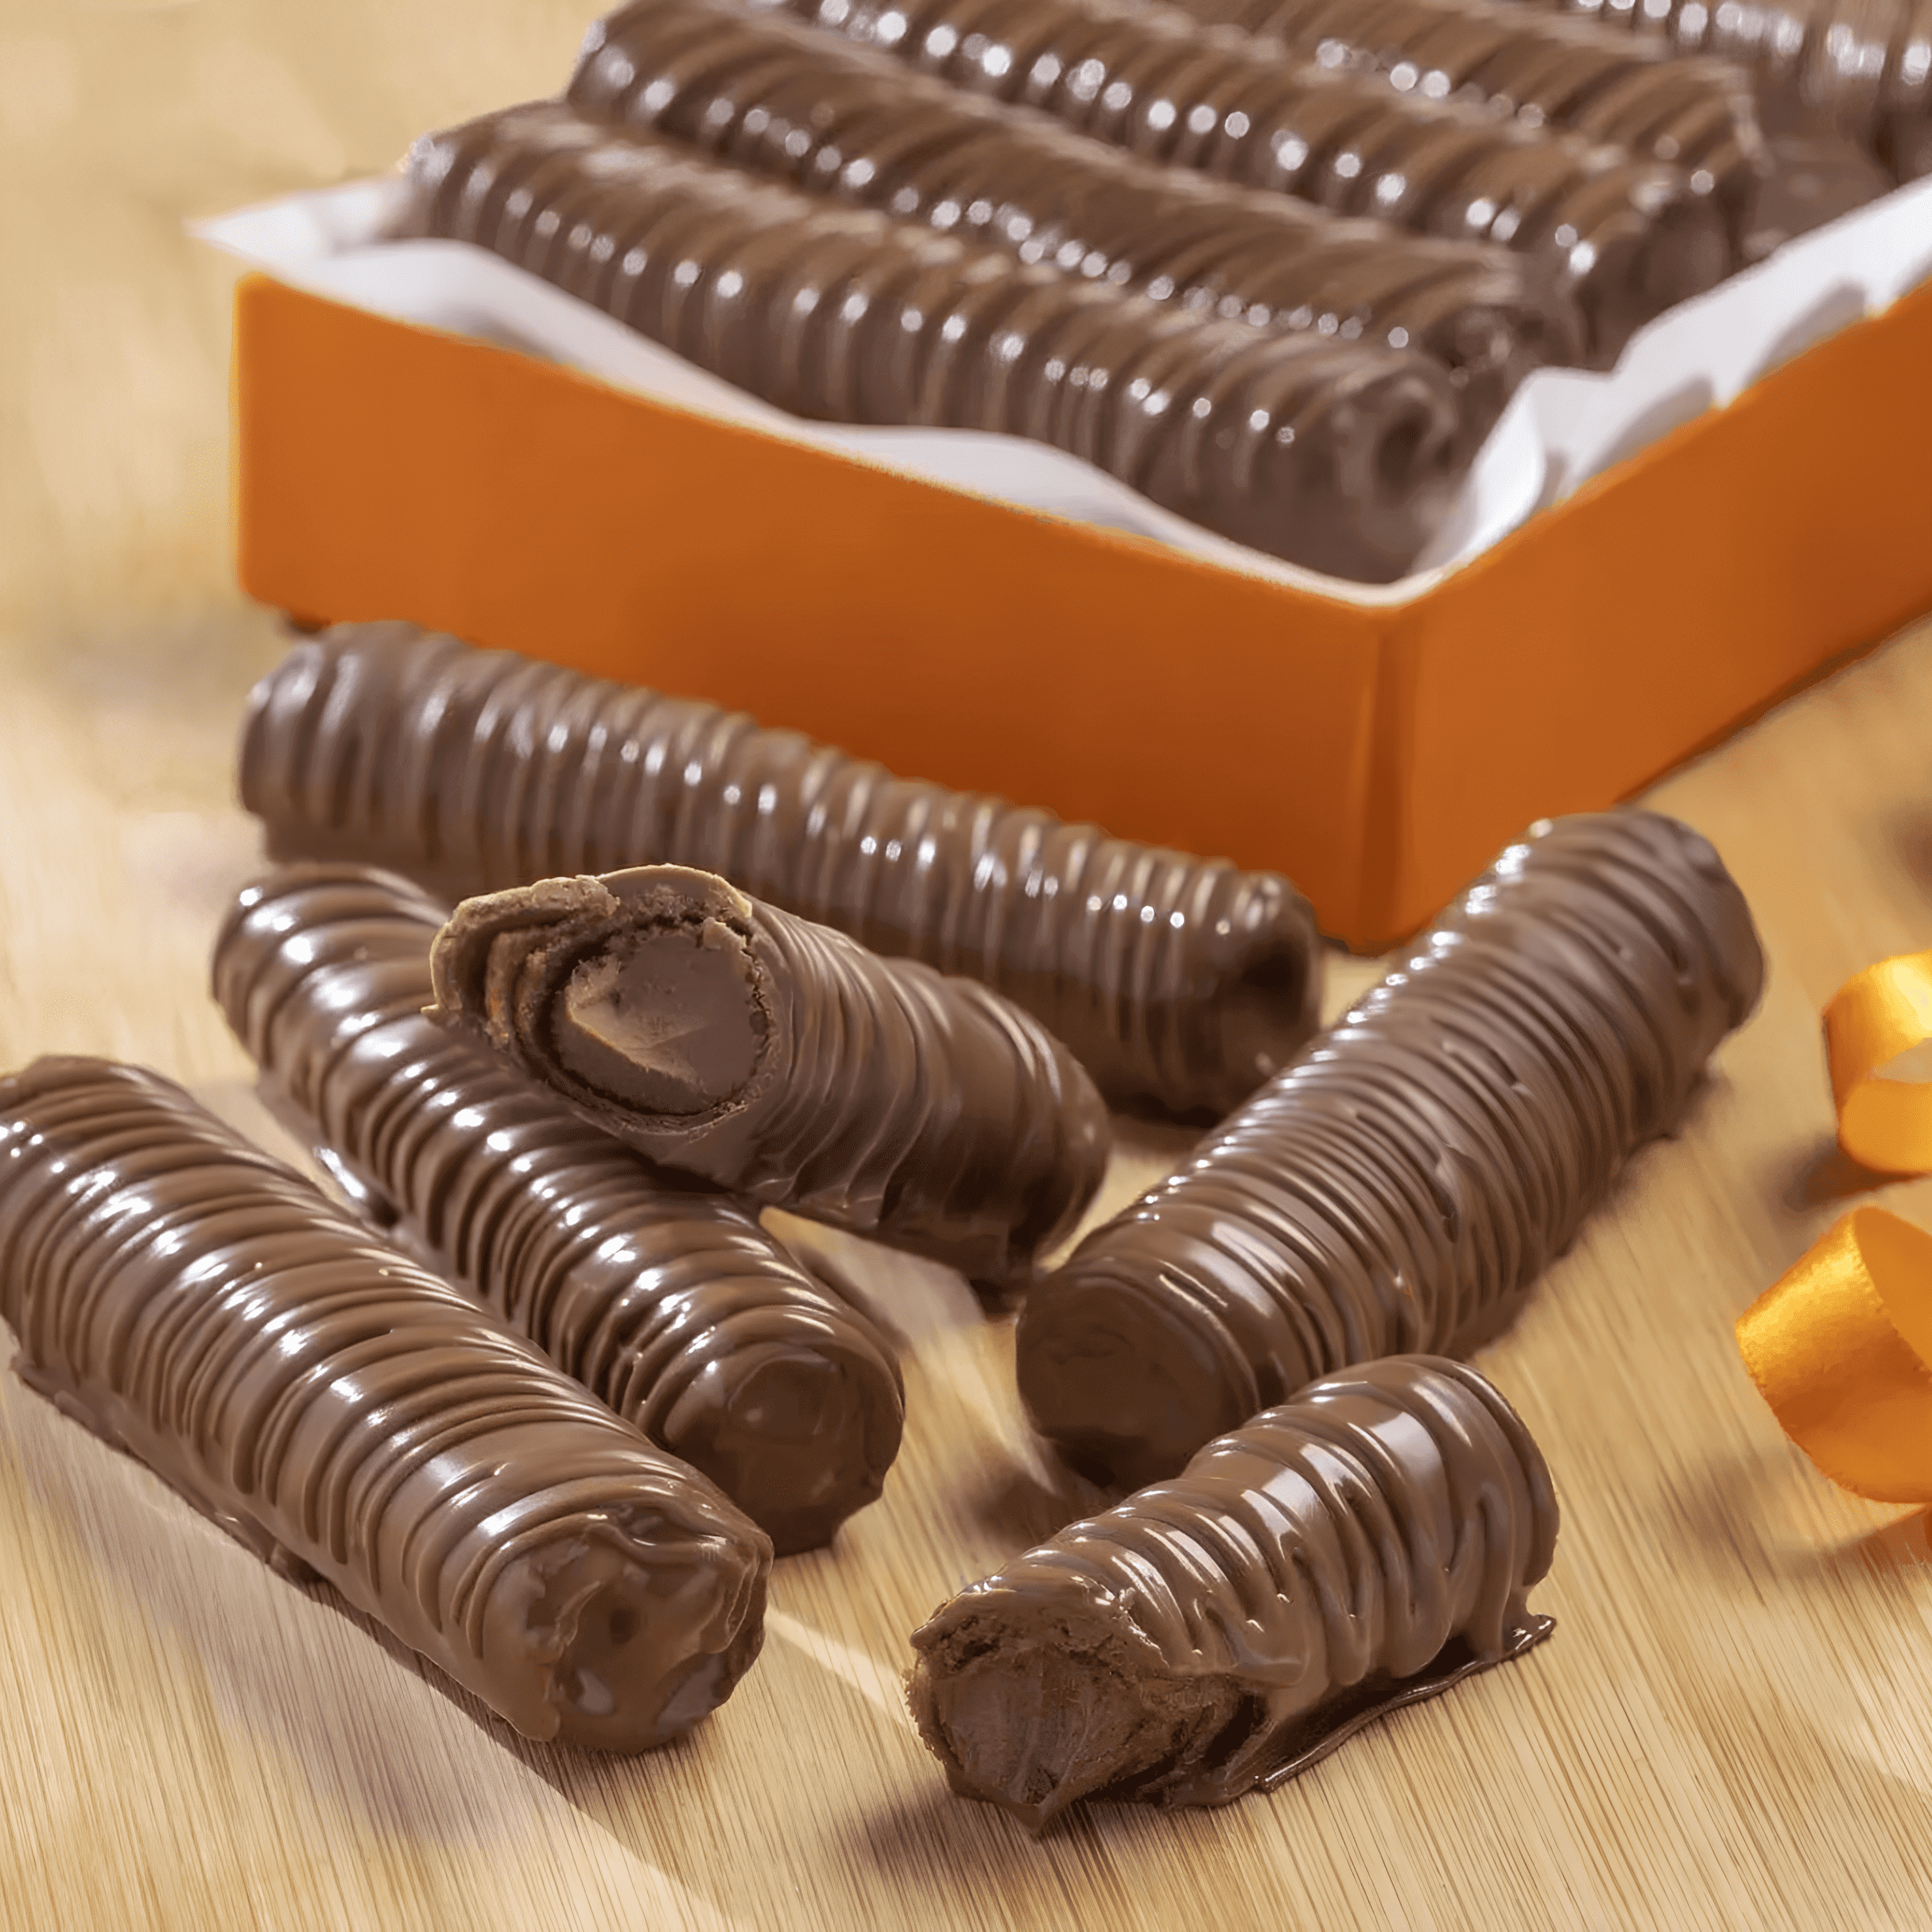 Cobertura Genuine Cargill Chocolate Branco 1kg - Maria Chocolate - Produtos  e Utensílios para Confeitaria. Chocolates Nacionais e Importados, Formas,  Embalagens. Balões Decorados.